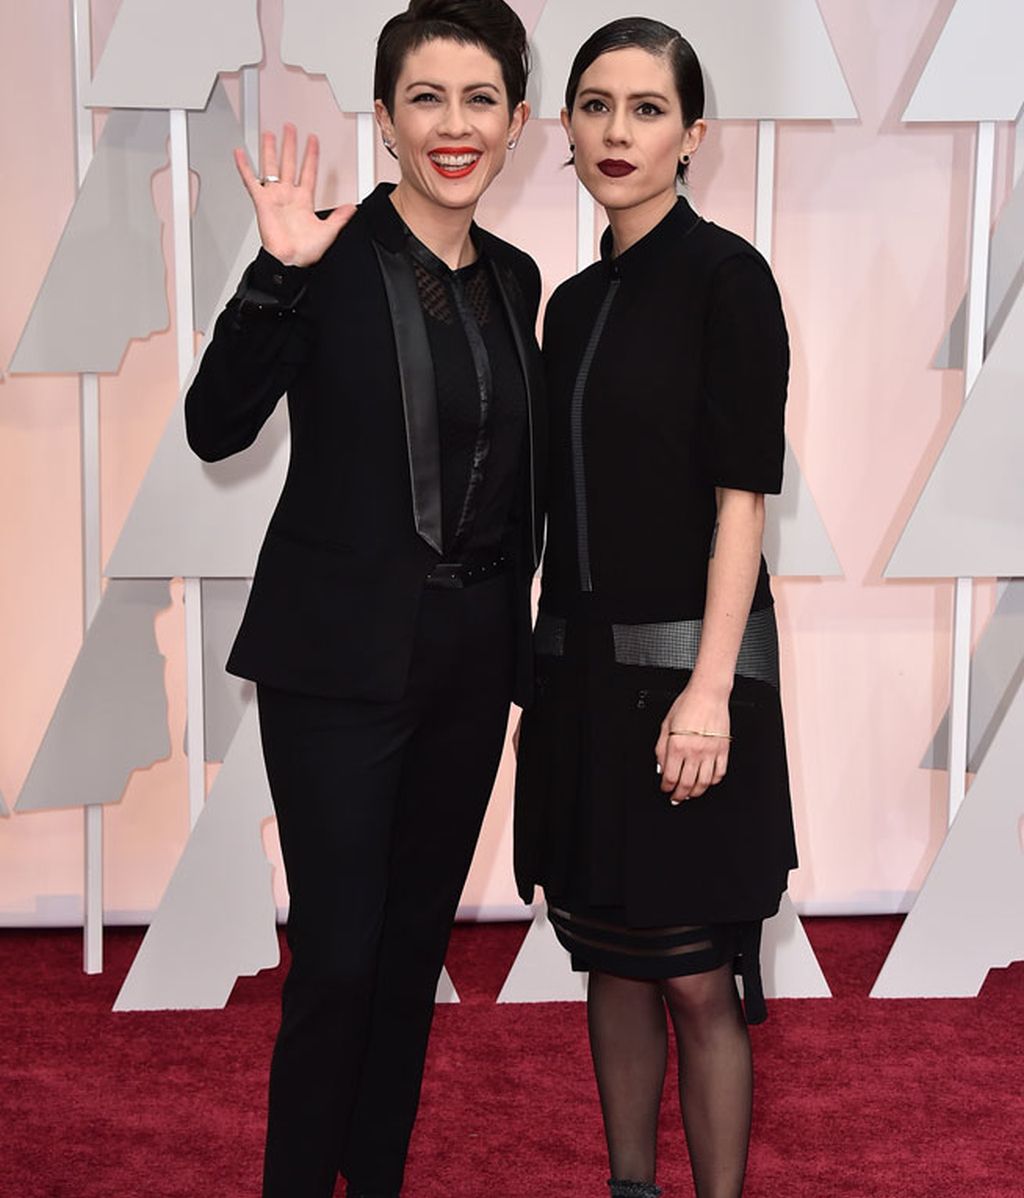 Las 'vips' eligen negro, plata y rojo para vestir en la alfombra roja de los Oscar